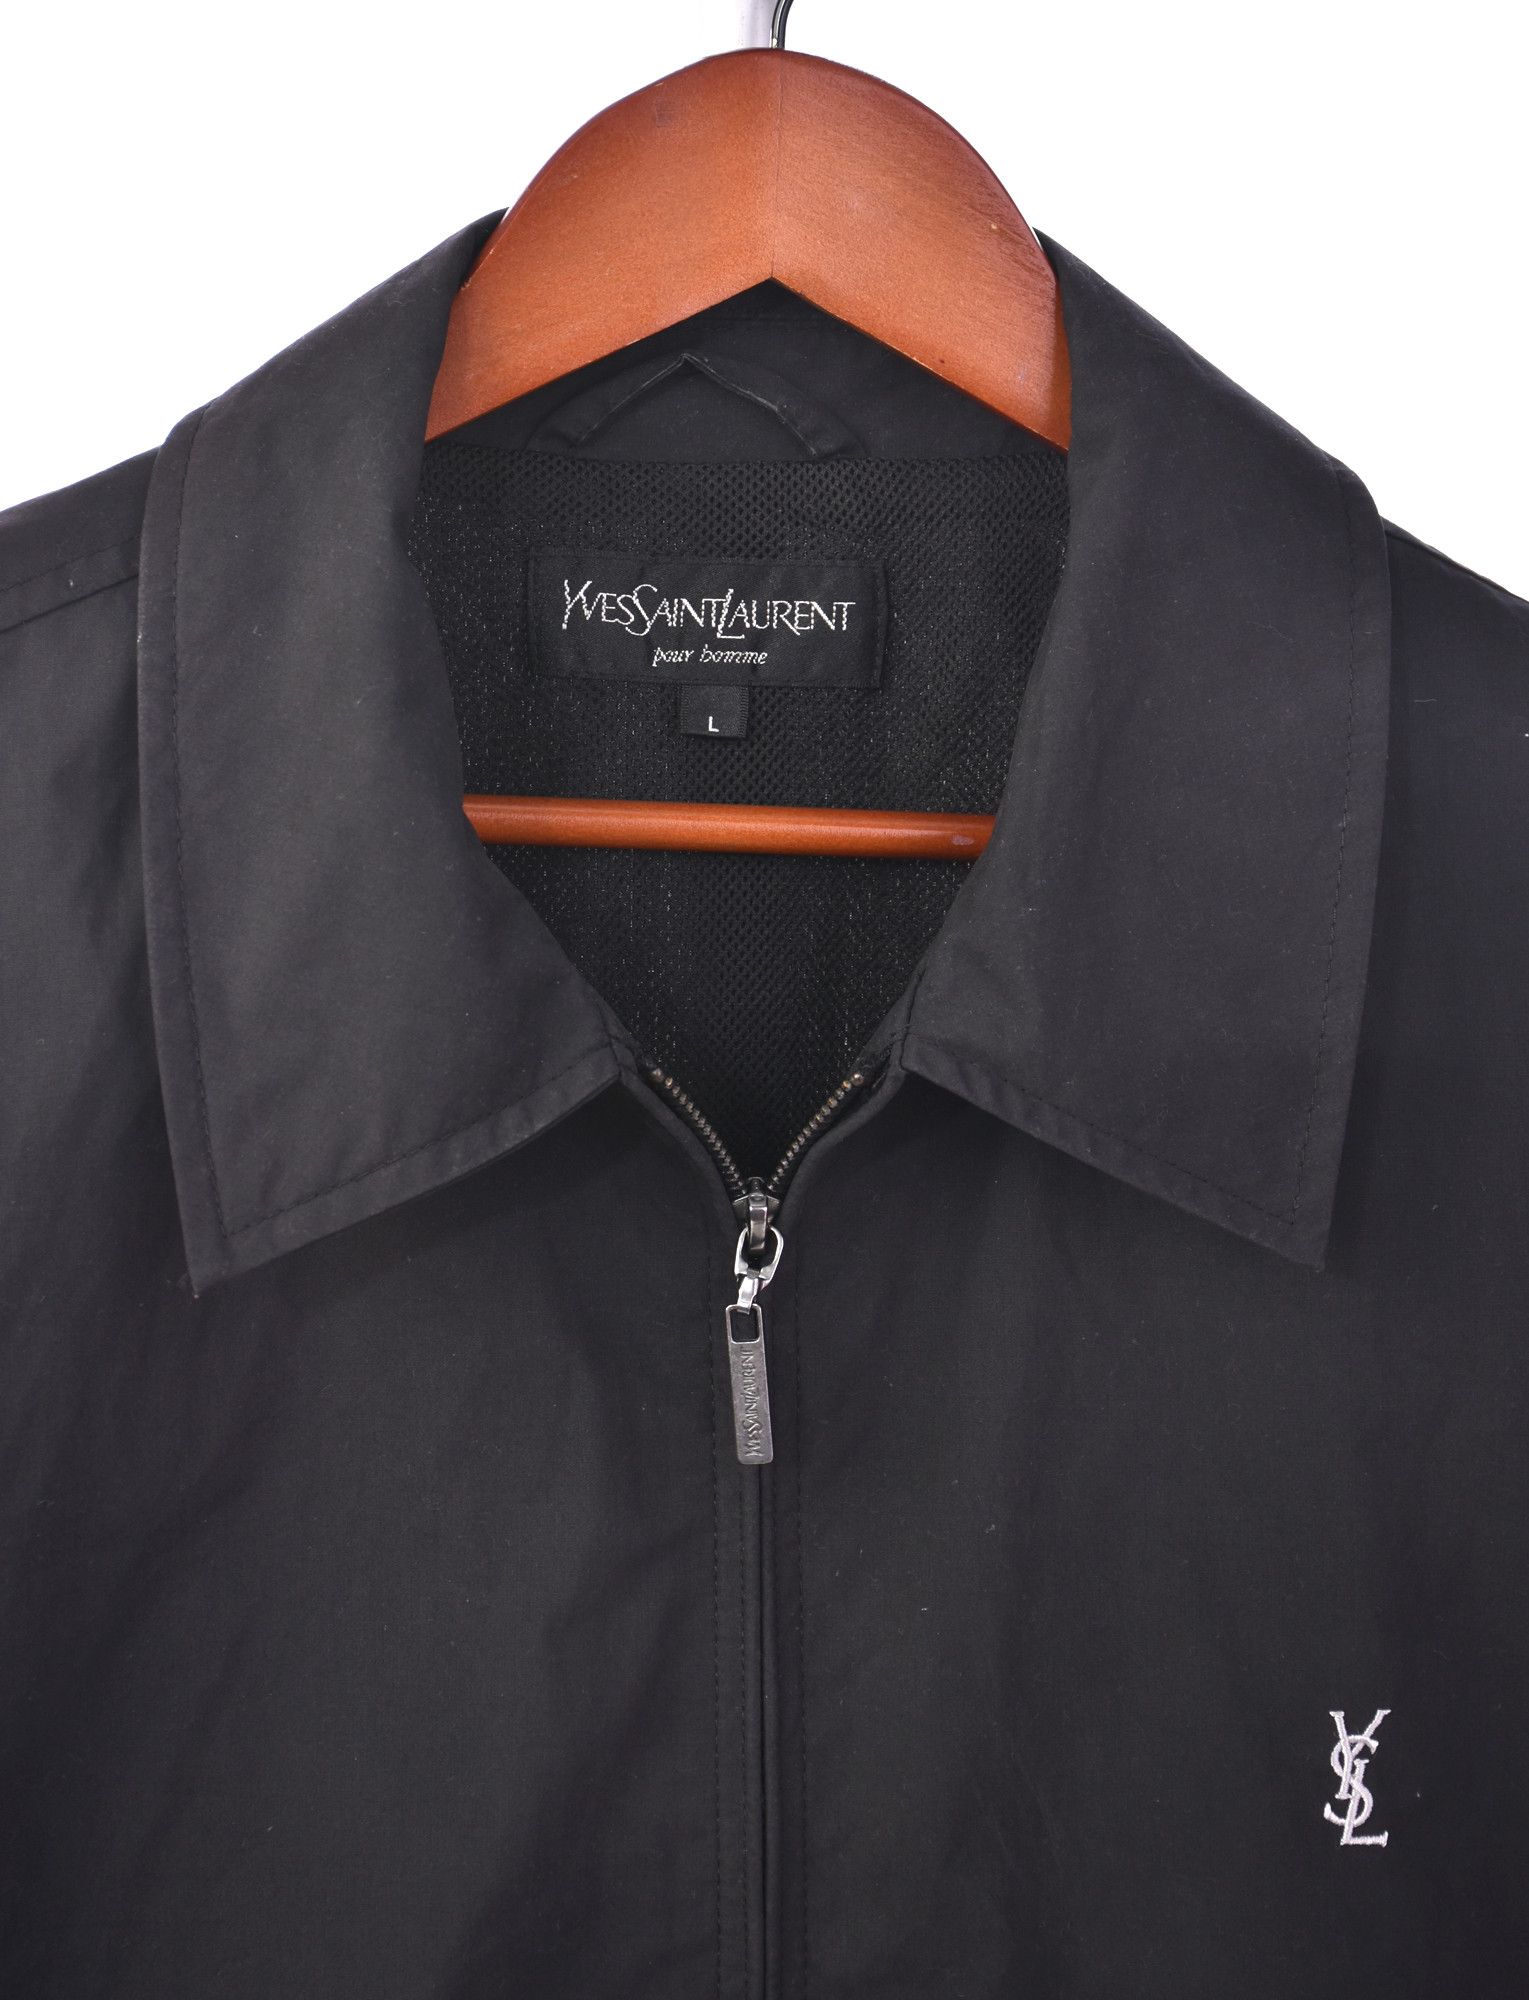 Yves Saint Laurent vintage black harrington jacket Size US L / EU 52-54 / 3 - 4 Preview